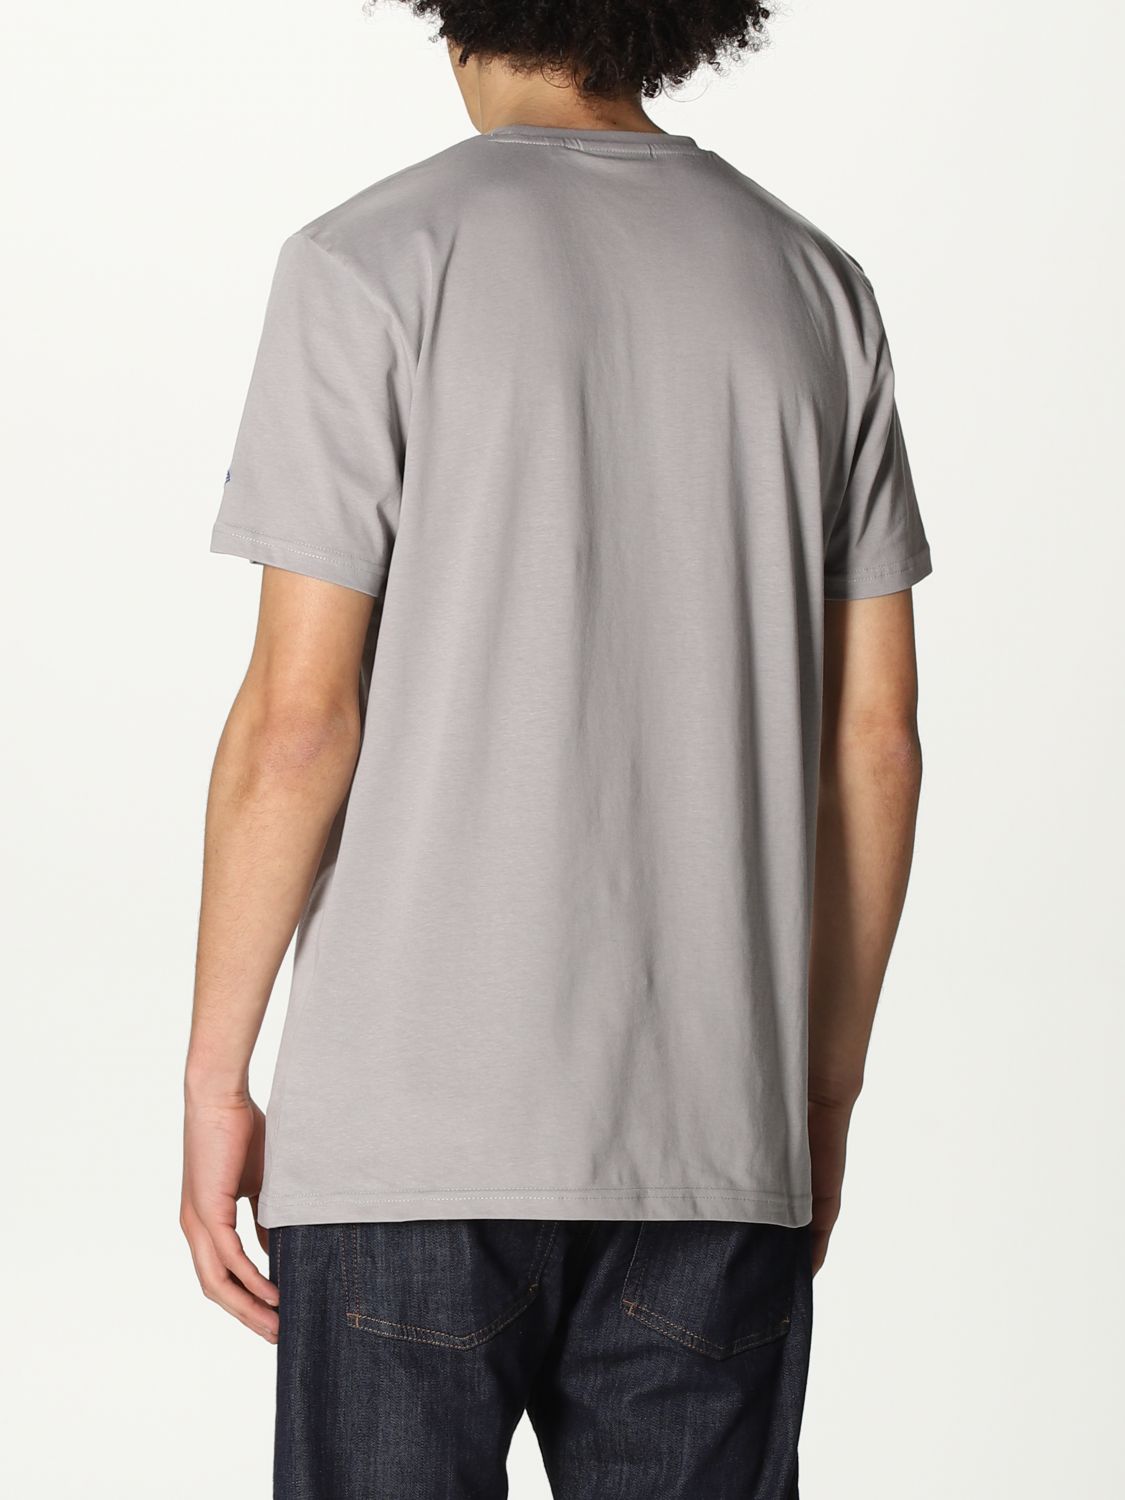 Shop New Era T Shirt online